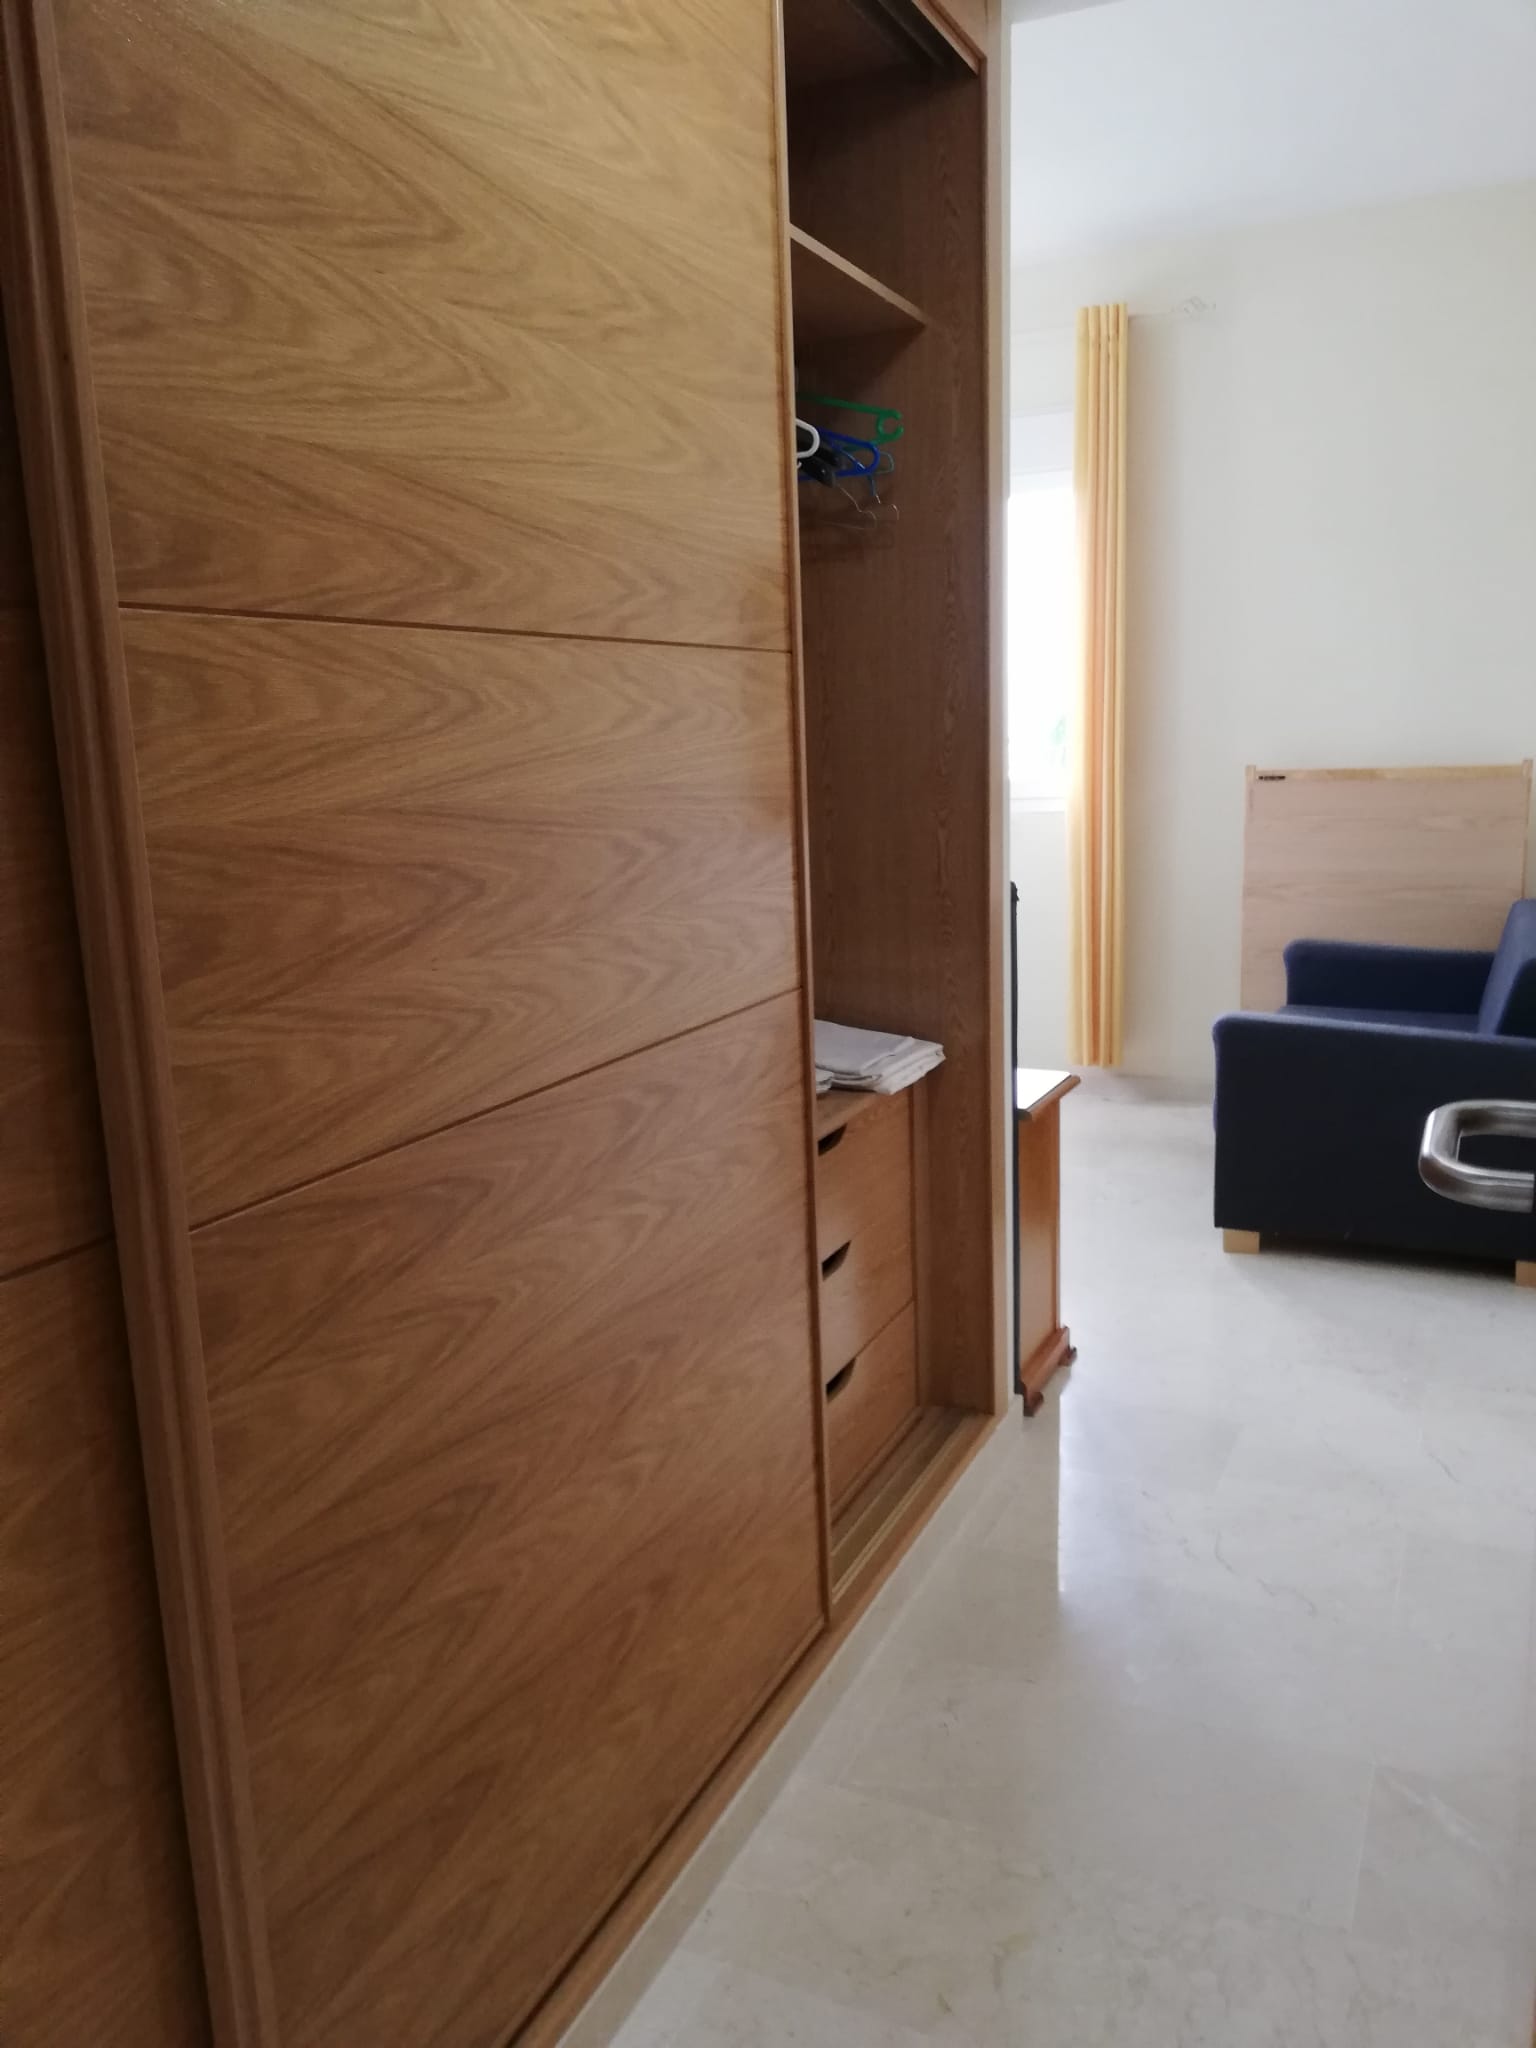 Se alquila piso de 2 habitaciones en Manilva con vista al mar - mibgroup.es